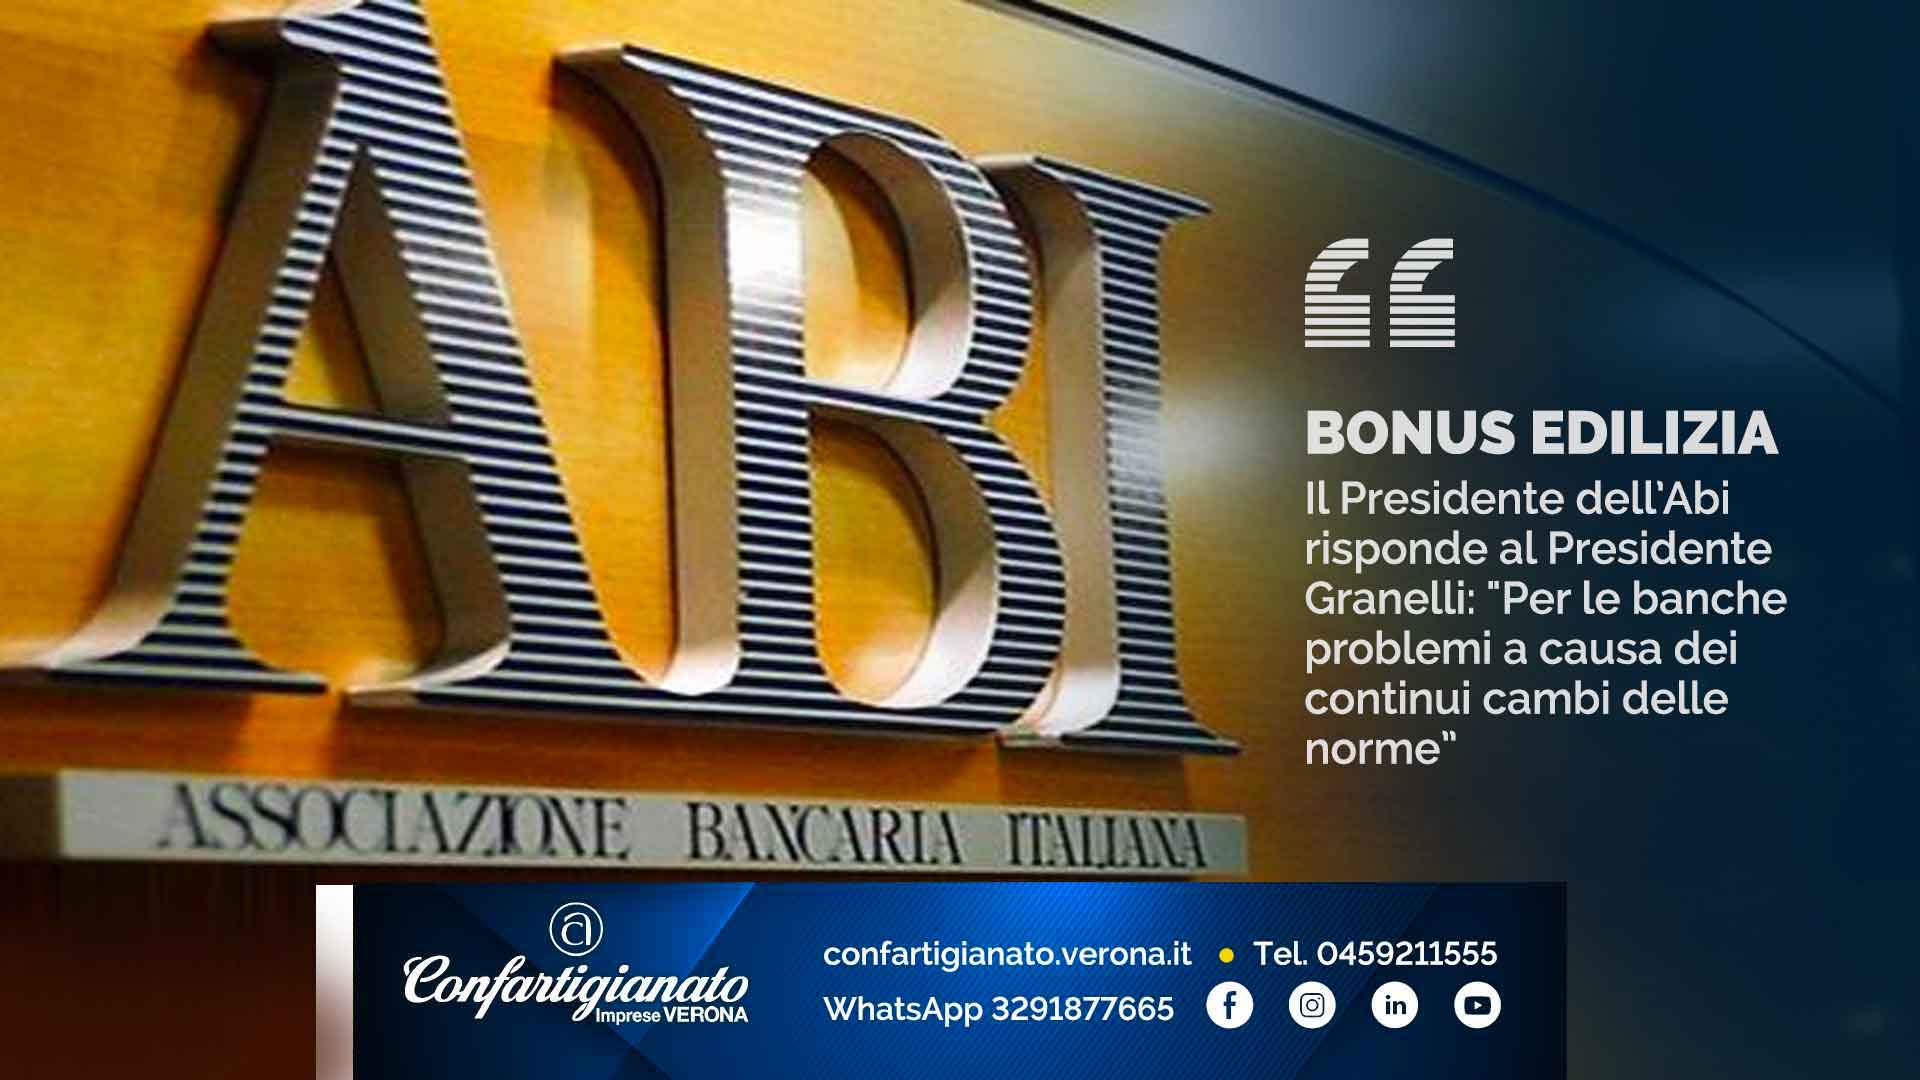 BONUS EDILIZIA – Il Presidente dell’Abi risponde al Presidente Granelli: "Per le banche problemi a causa dei continui cambi delle norme”